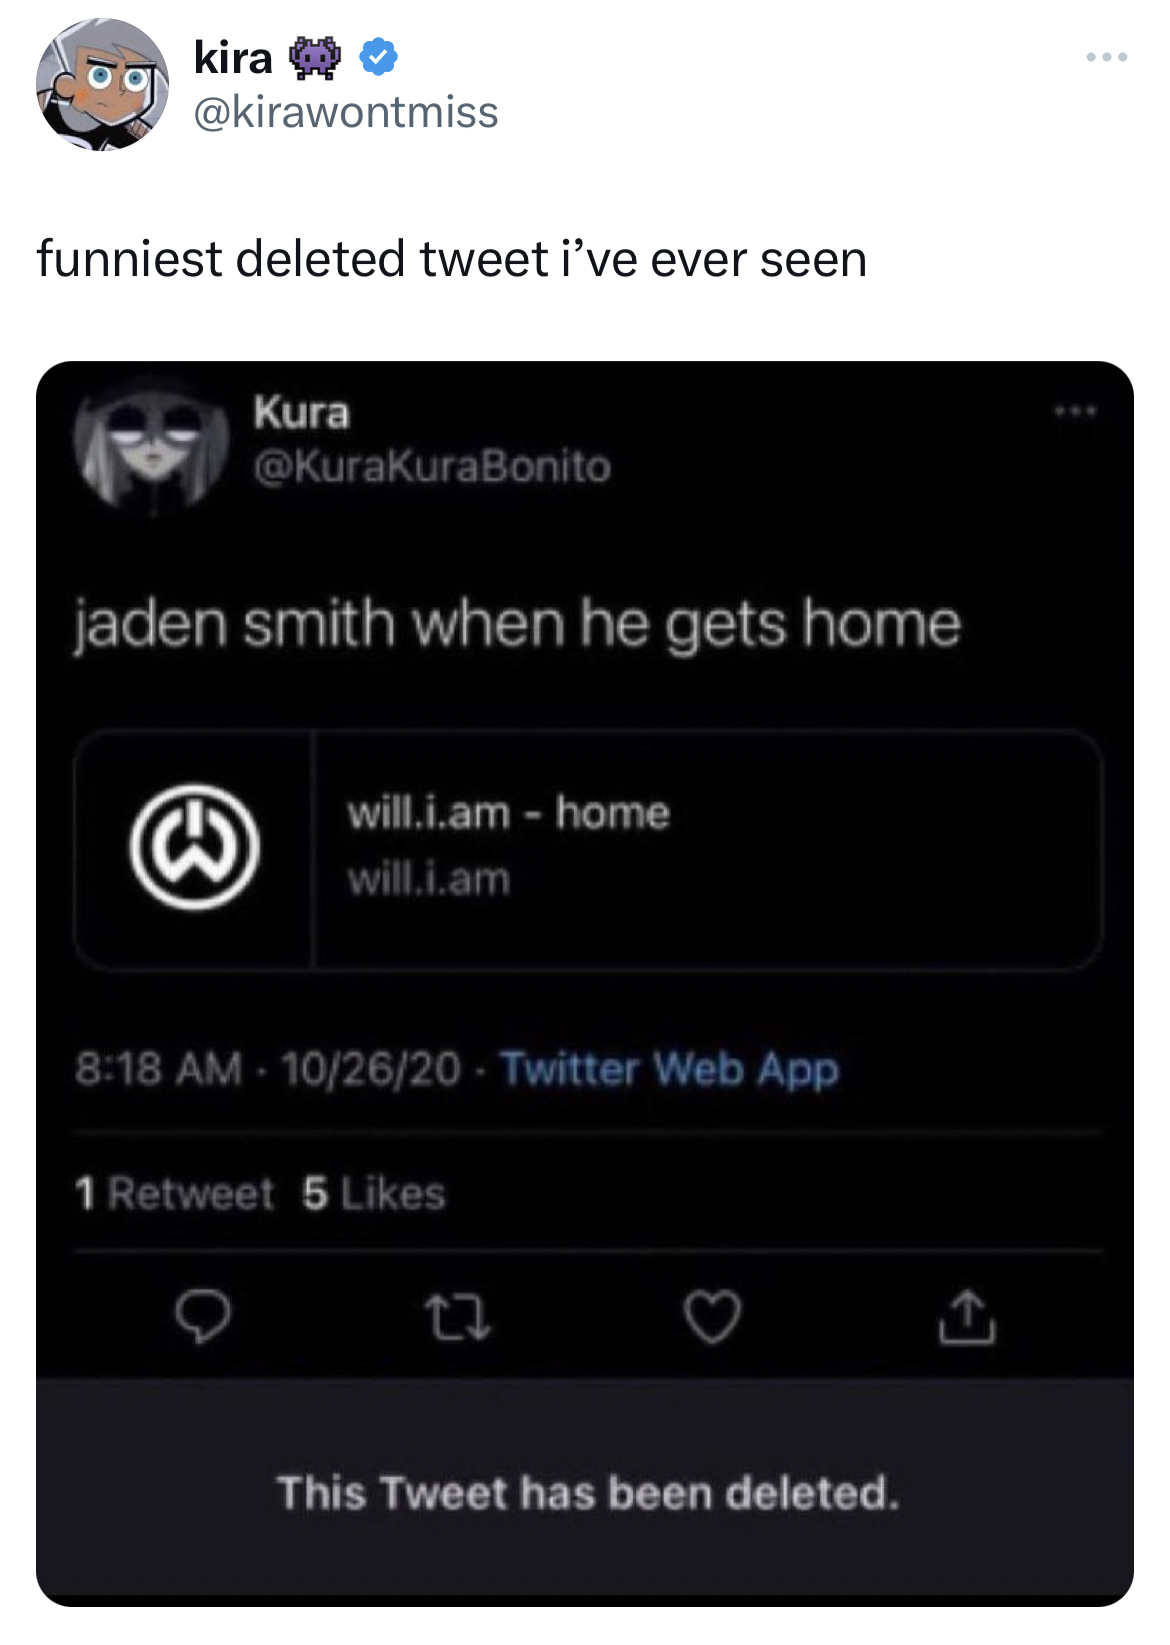 Tweets of the week - jaden smith will i am home - kira funniest deleted tweet i've ever seen Kura jaden smith when he gets home will.i.am home will.i.am 102620 Twitter Web App 1 Retweet 5 13 This Tweet has been deleted.